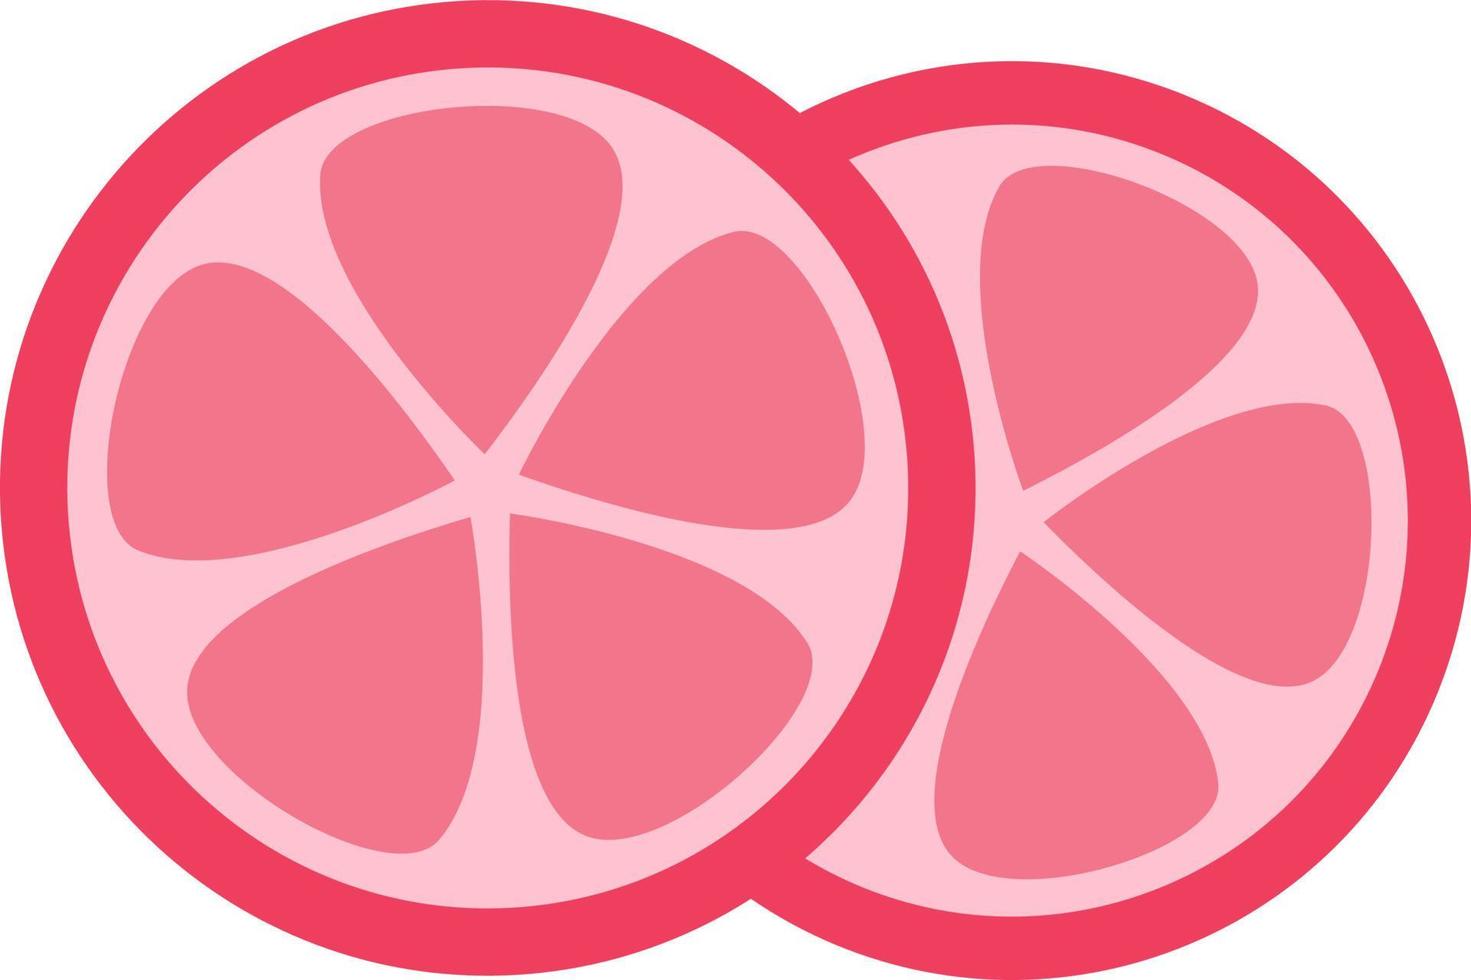 Tranches de citron rose, illustration, vecteur sur fond blanc